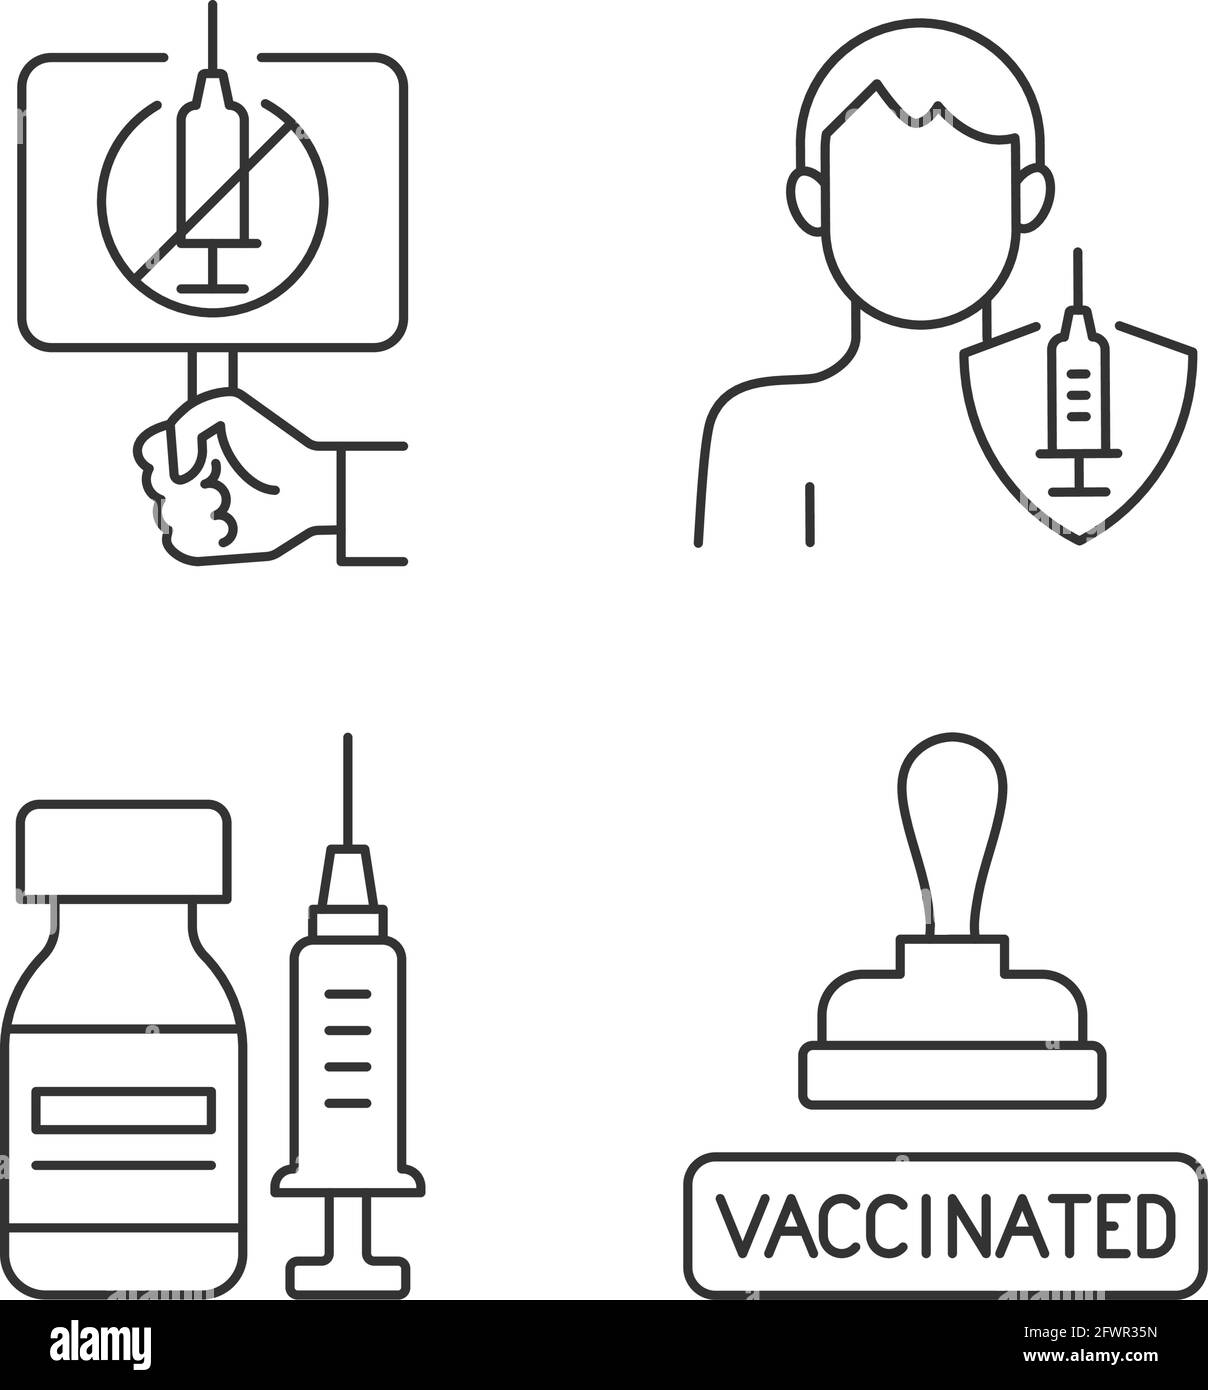 Immunization against virus linear icons set Stock Vector